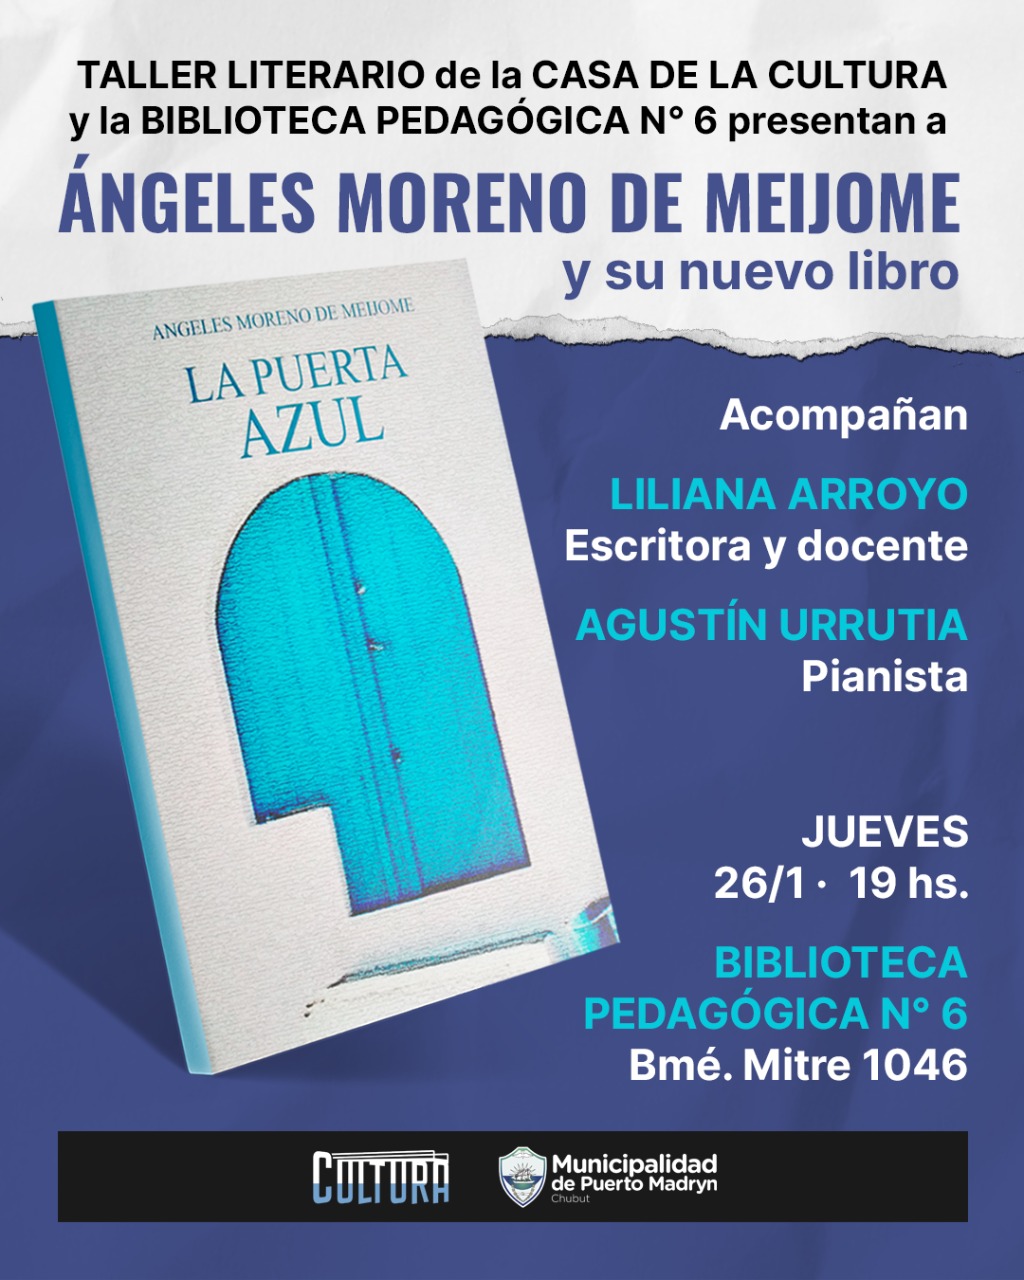 Ángeles Moreno De Meijome Presenta Su Nuevo Libro “La Puerta Azul”